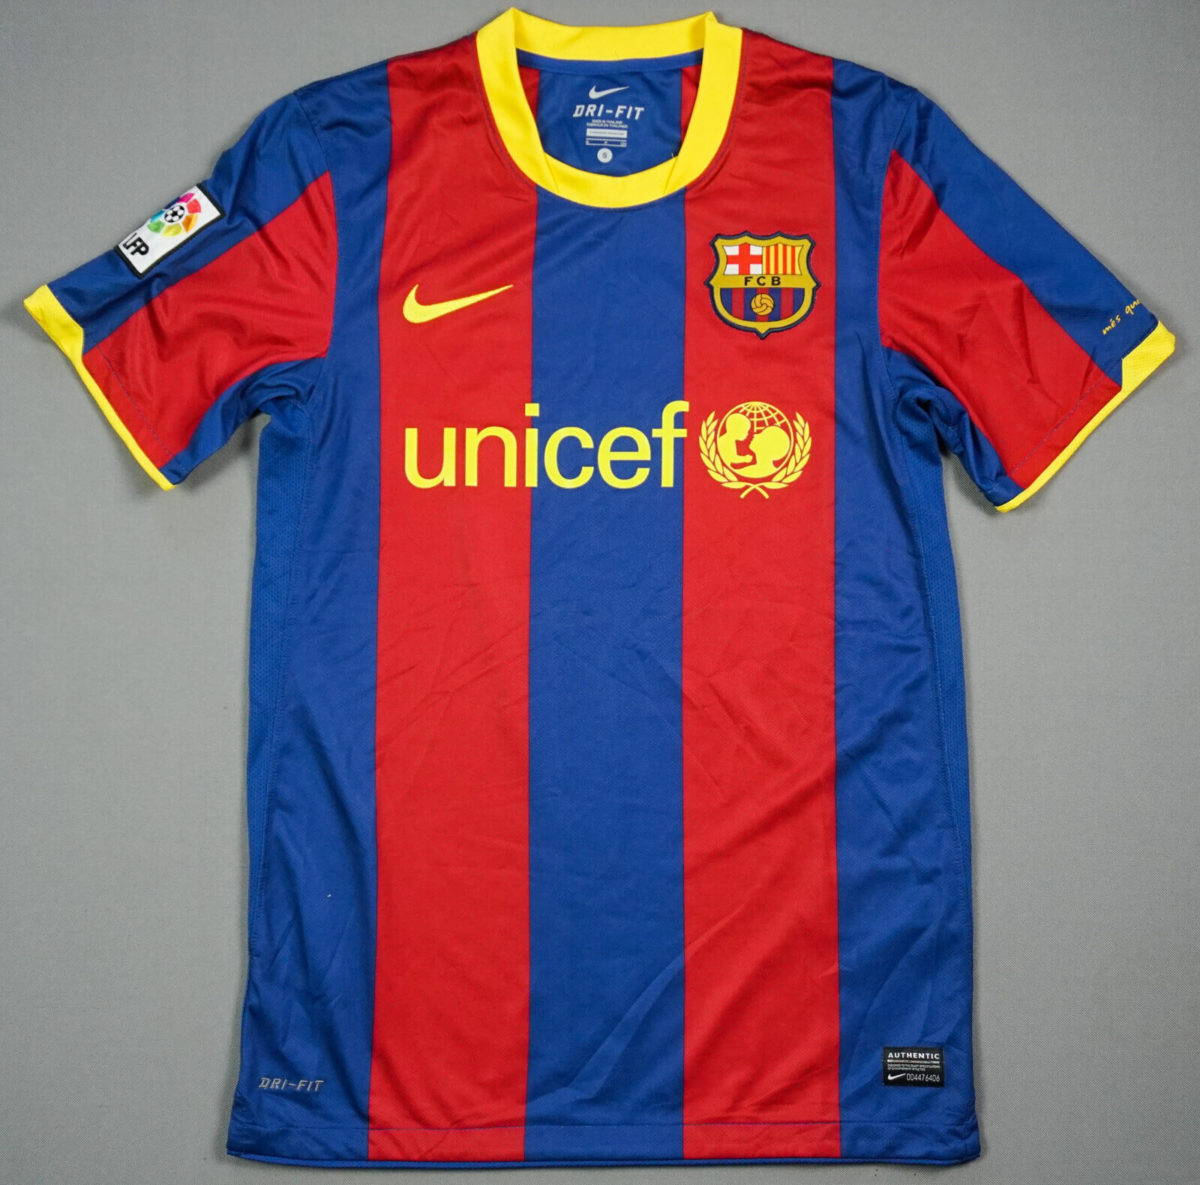 Meest iconische shirts in de voetbalgeschiedenis: Barcelona 2010